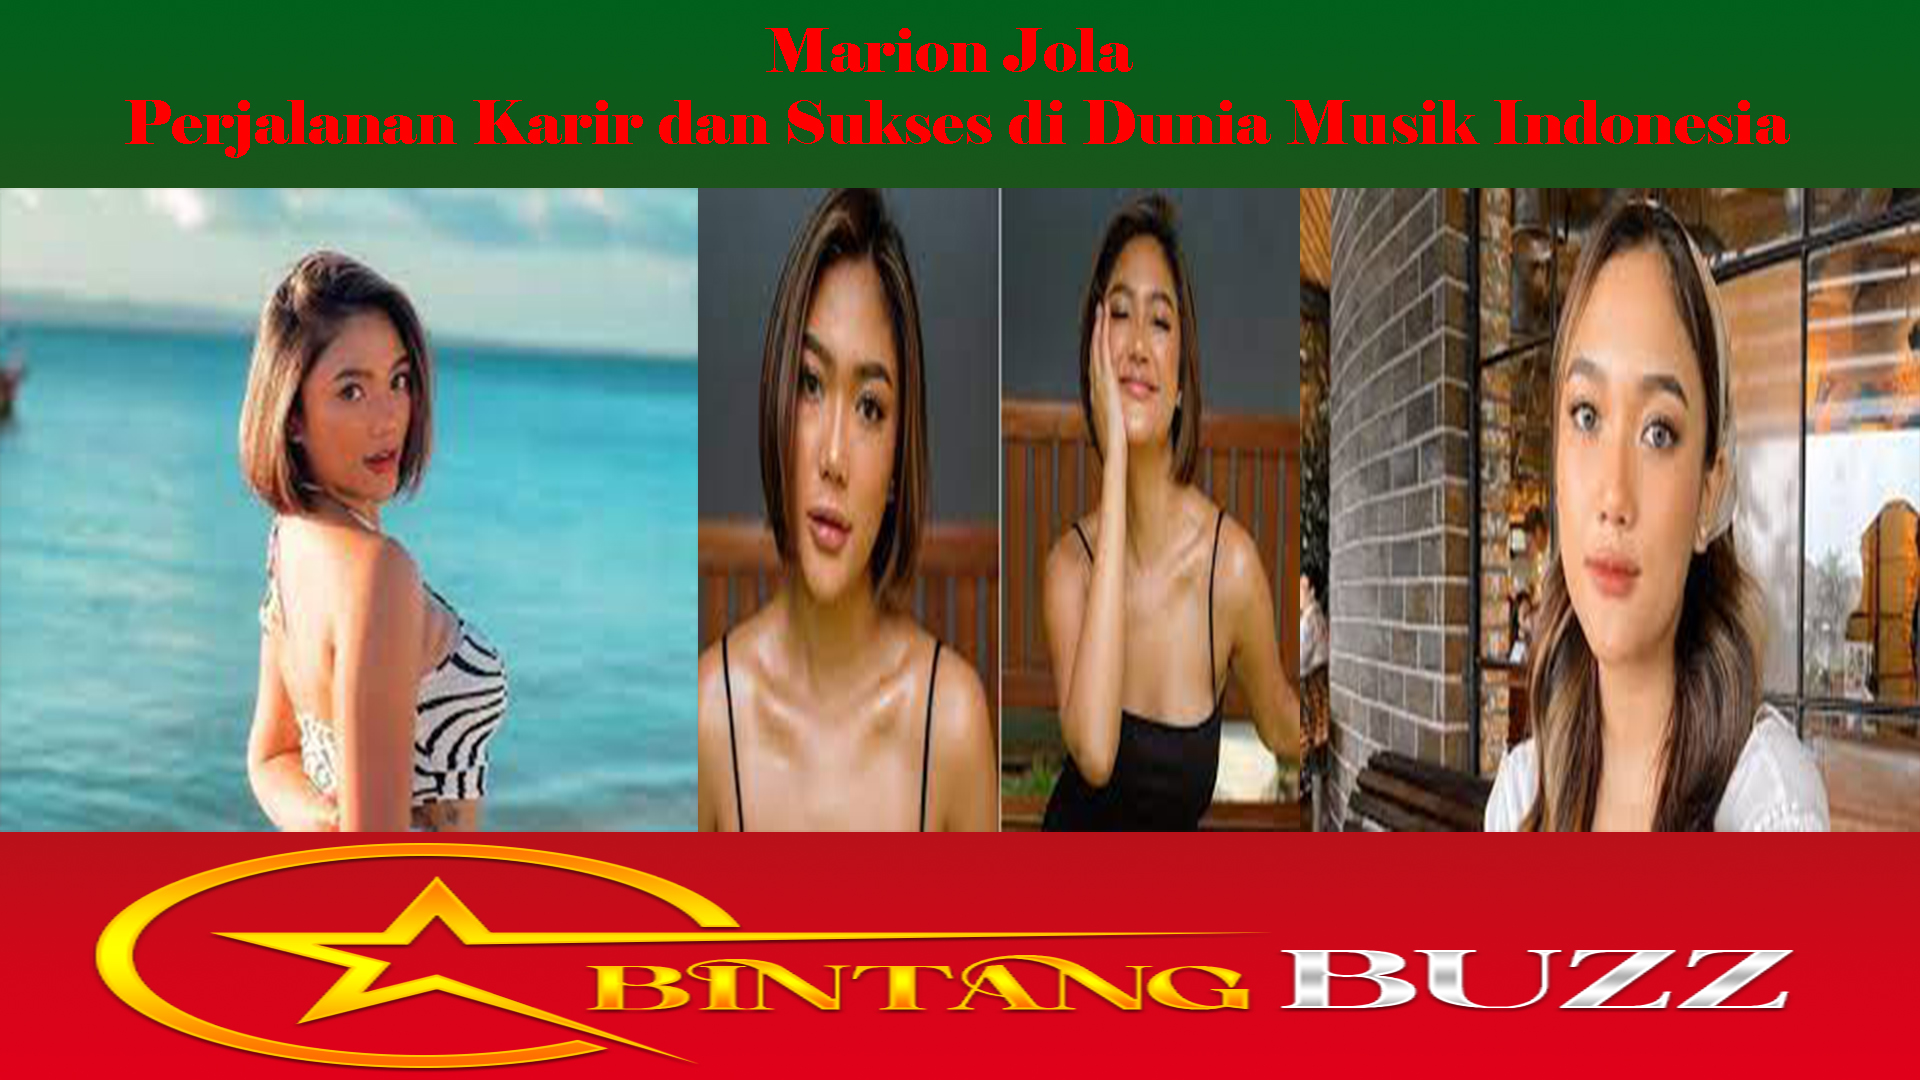 Marion Jola Perjalanan Karir dan Sukses di Dunia Musik Indonesia